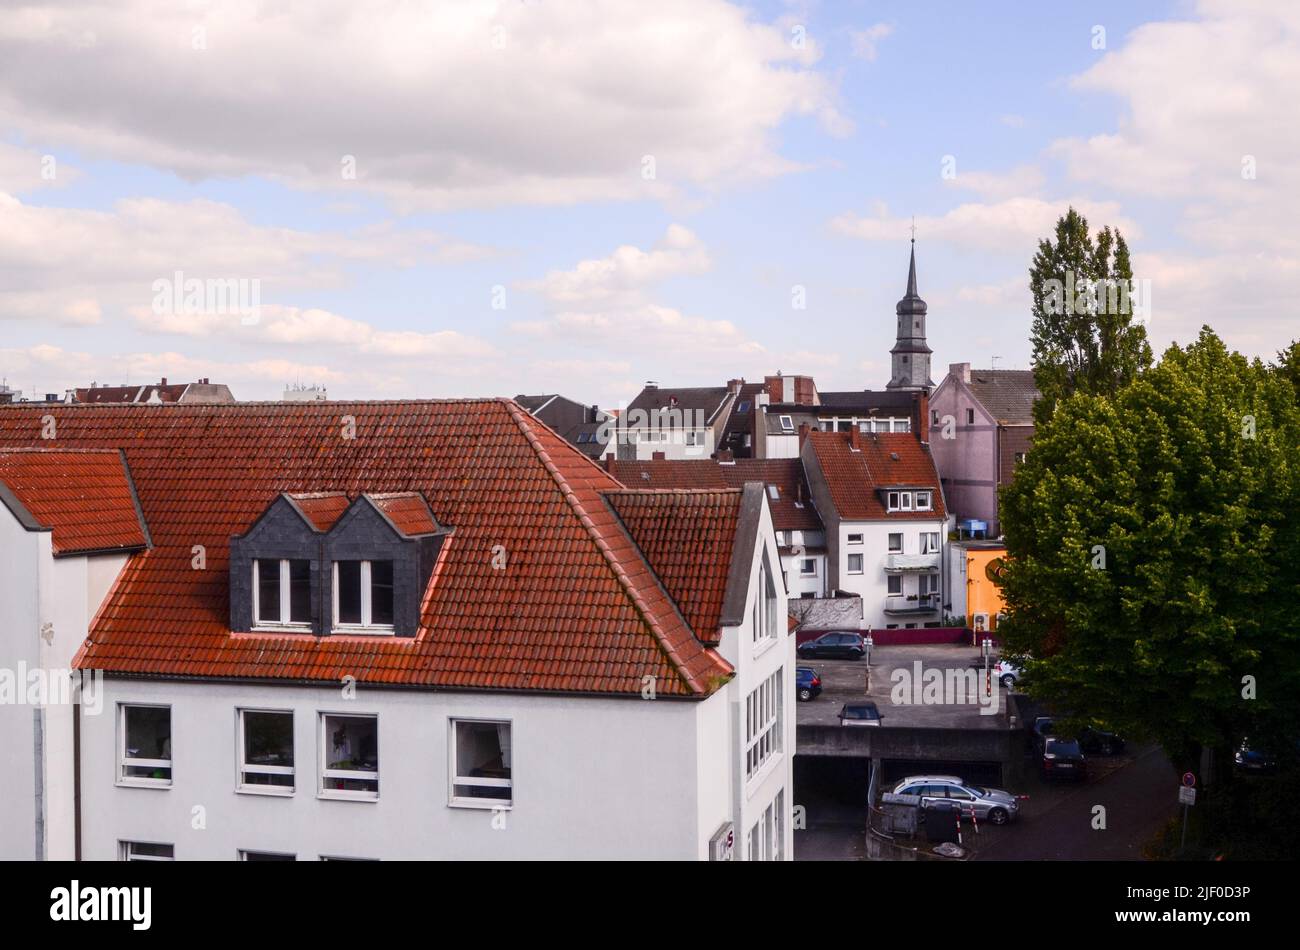 Vieille ville gothique allemande de Hamm avec des toits typiques Banque D'Images